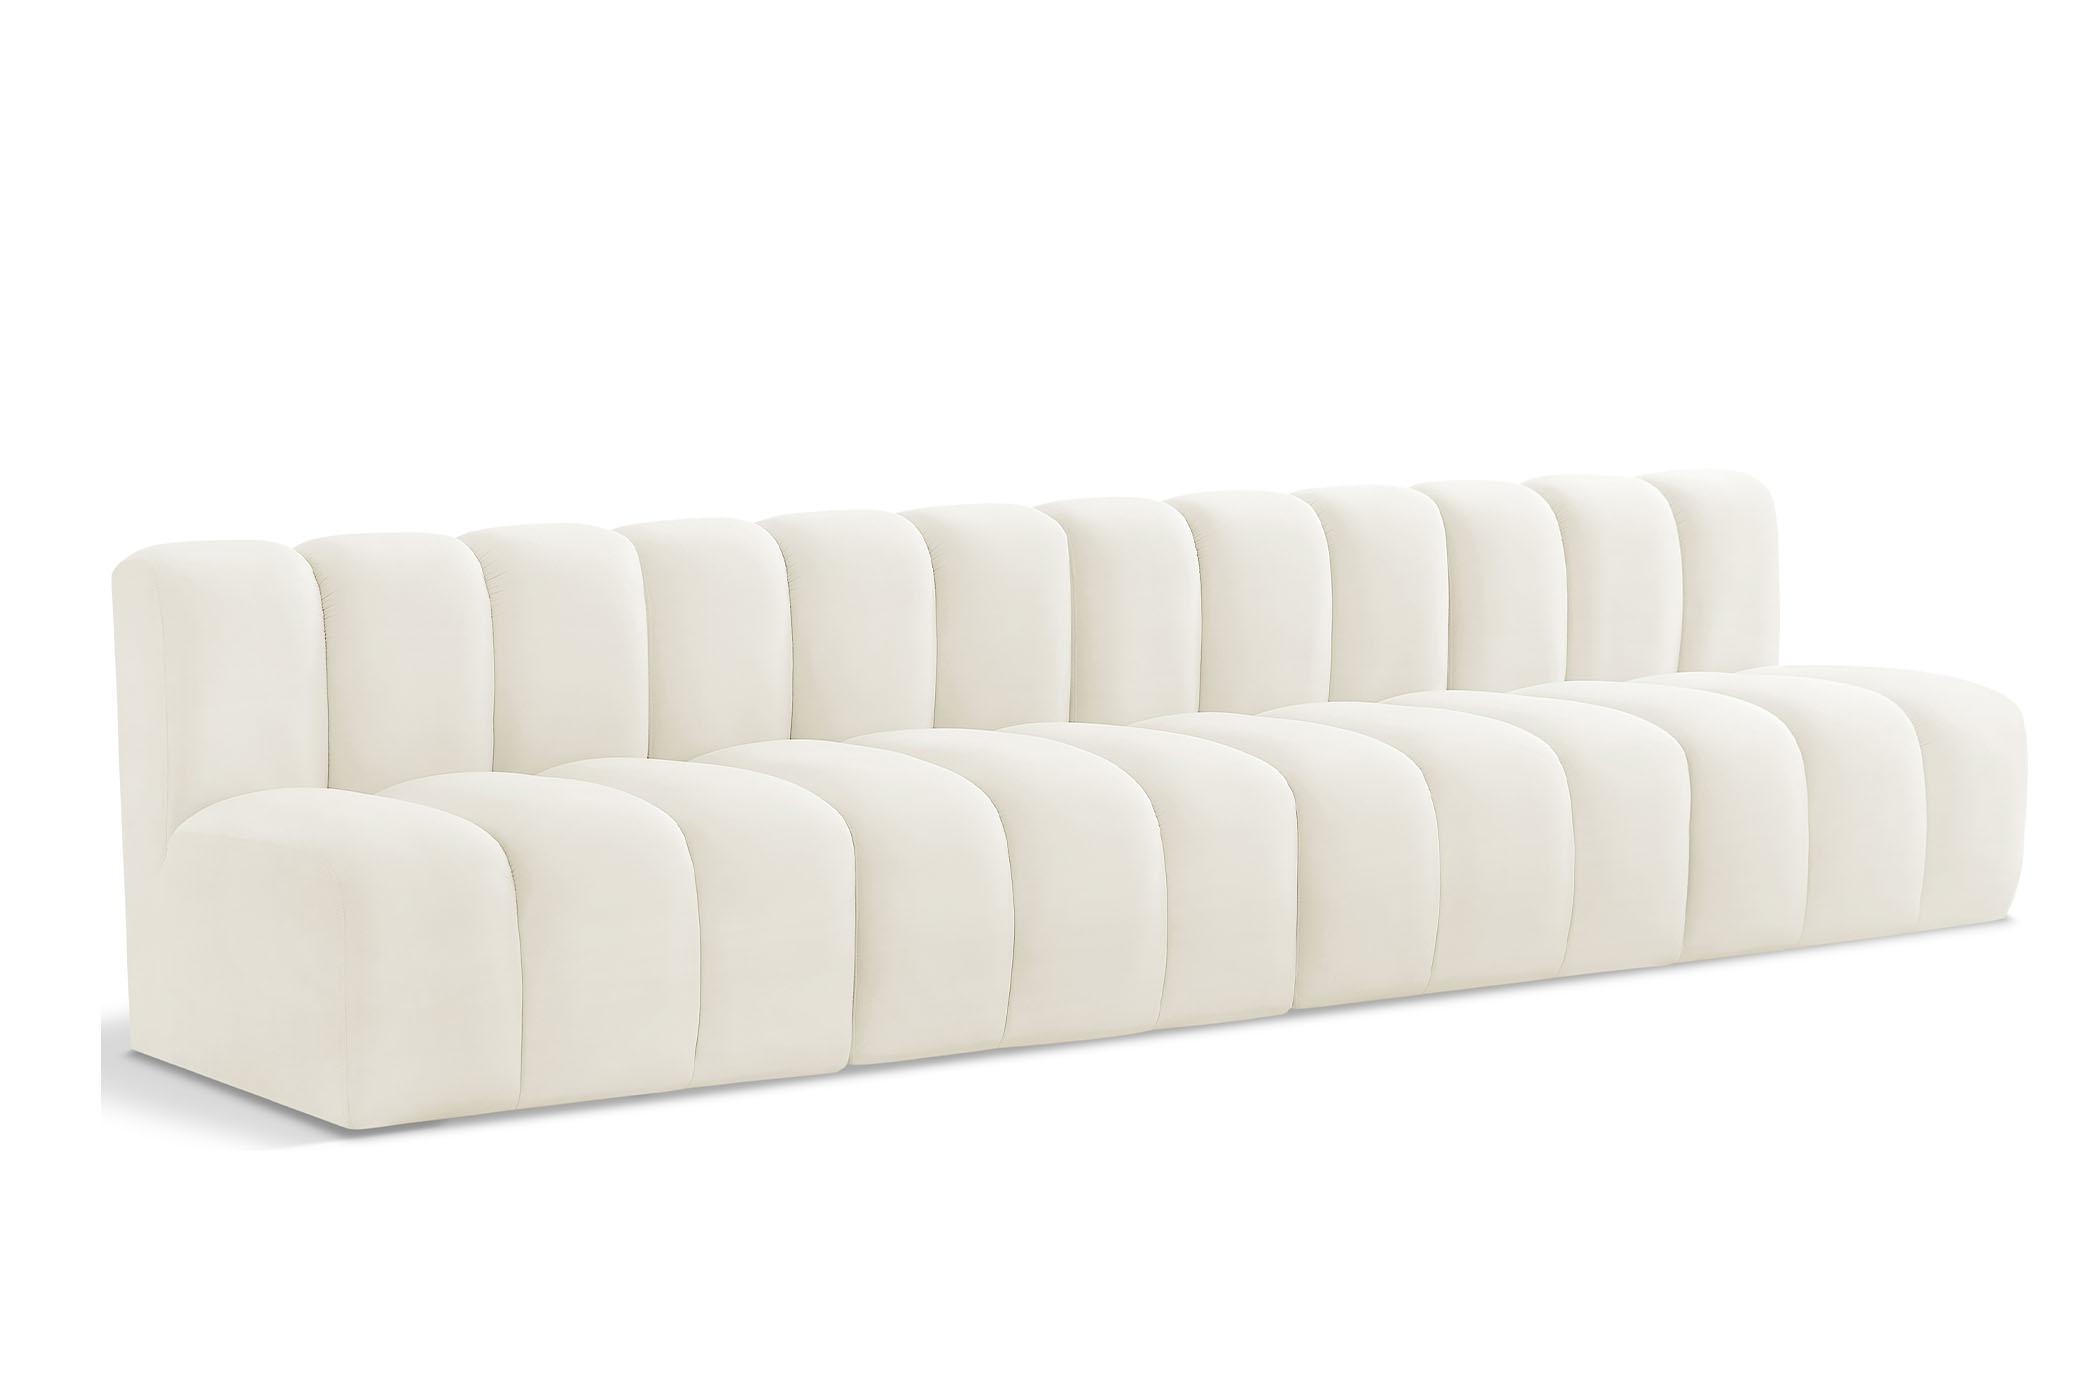 Contemporary, Modern Modular Sectional Sofa ARC 103Cream-S4E 103Cream-S4E in Cream Velvet